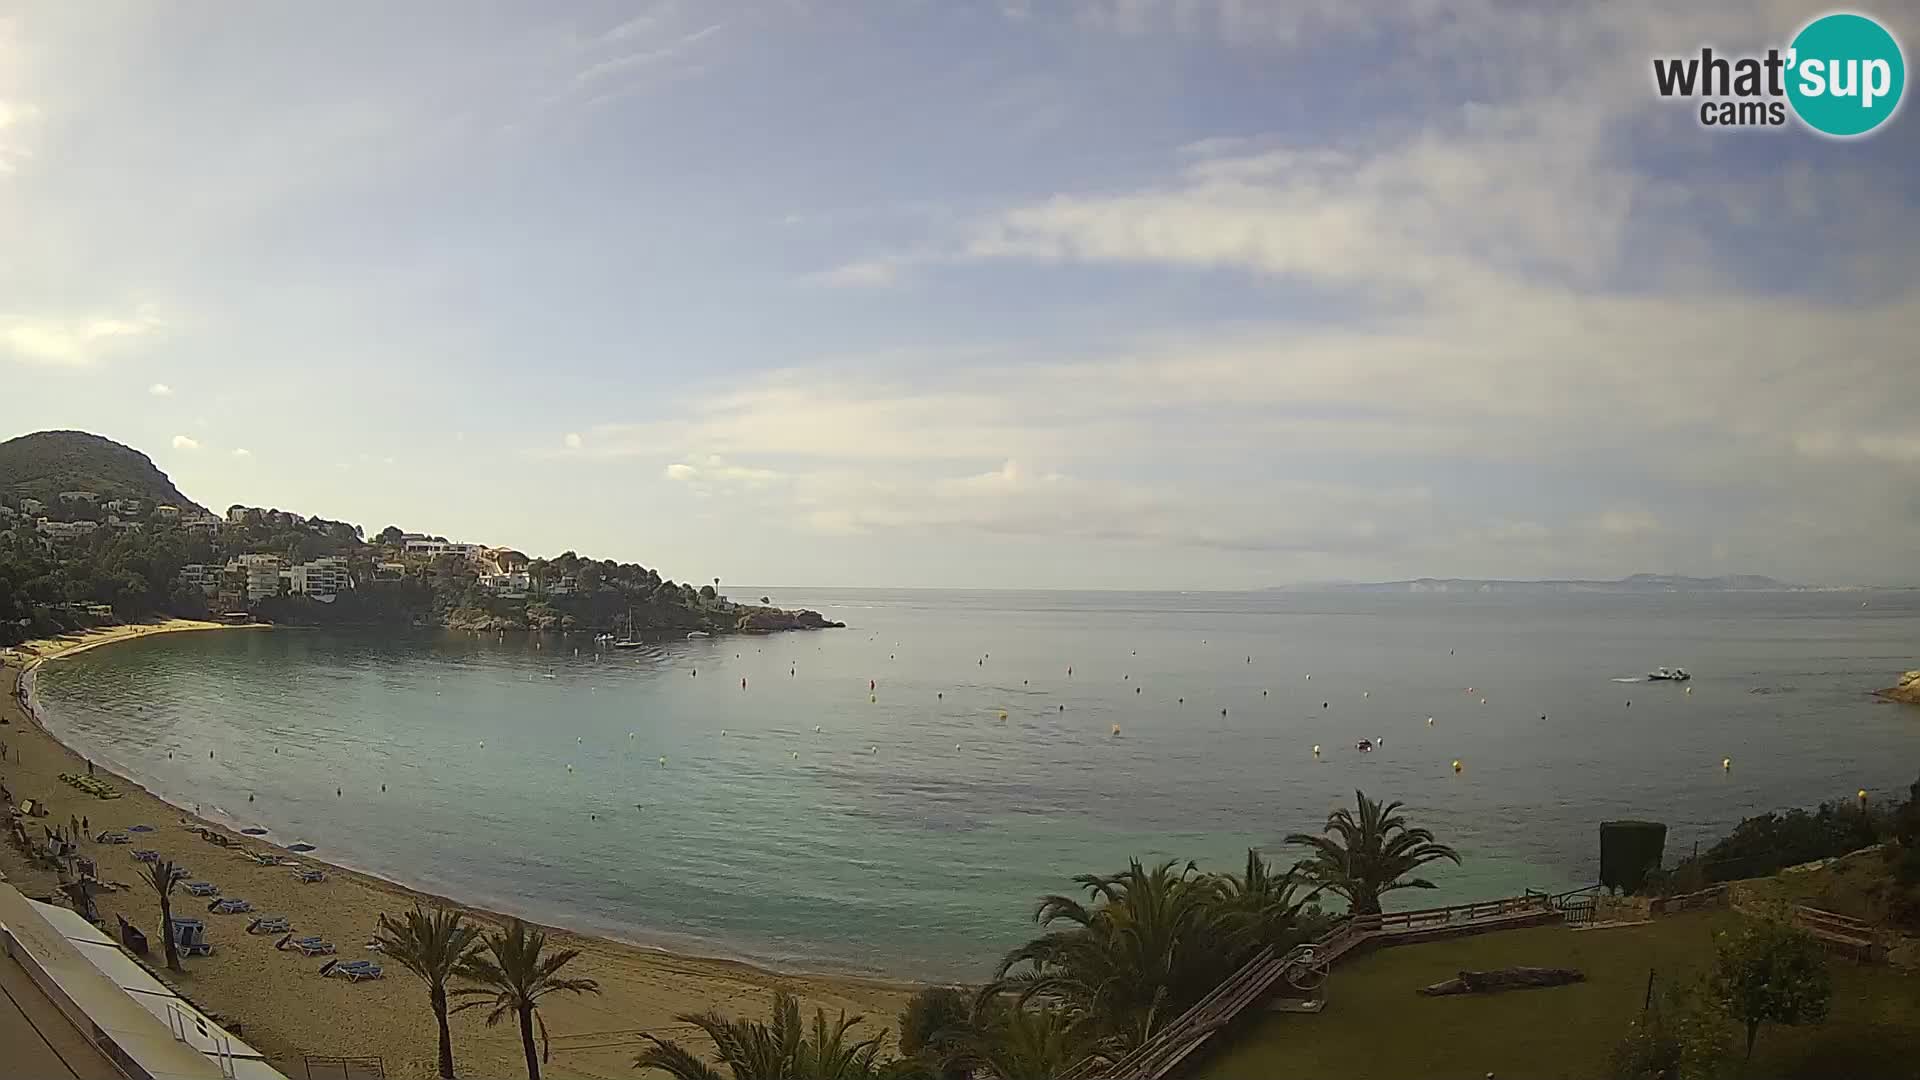 Playa de l’Almadrava camera en vivo Roses – Costa Brava – Espana